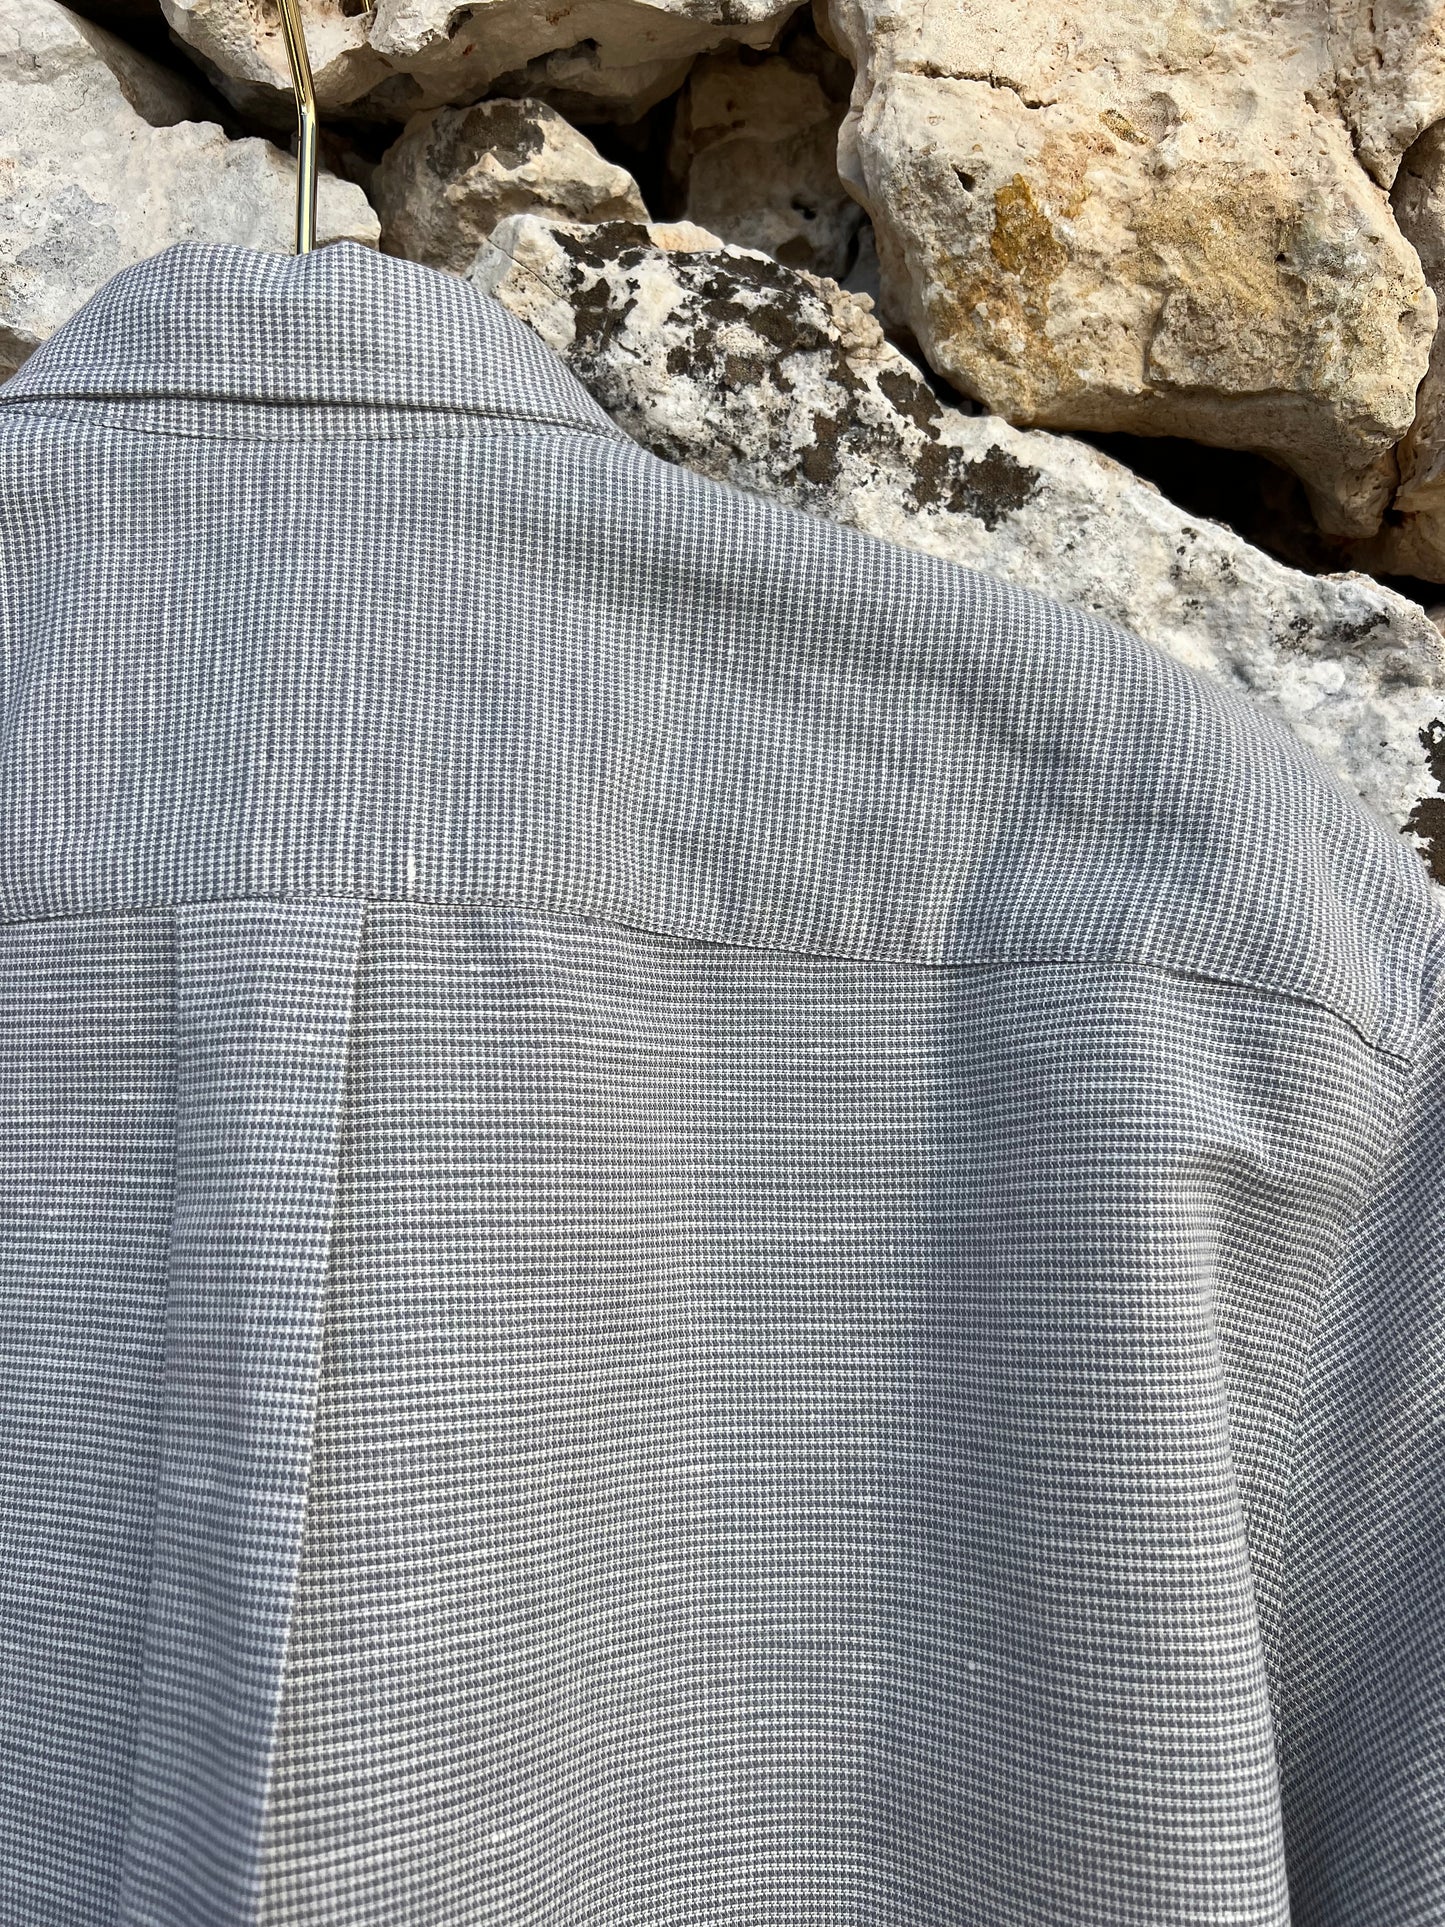 Shirt Men - Long Sleeve Heather Grey Linen